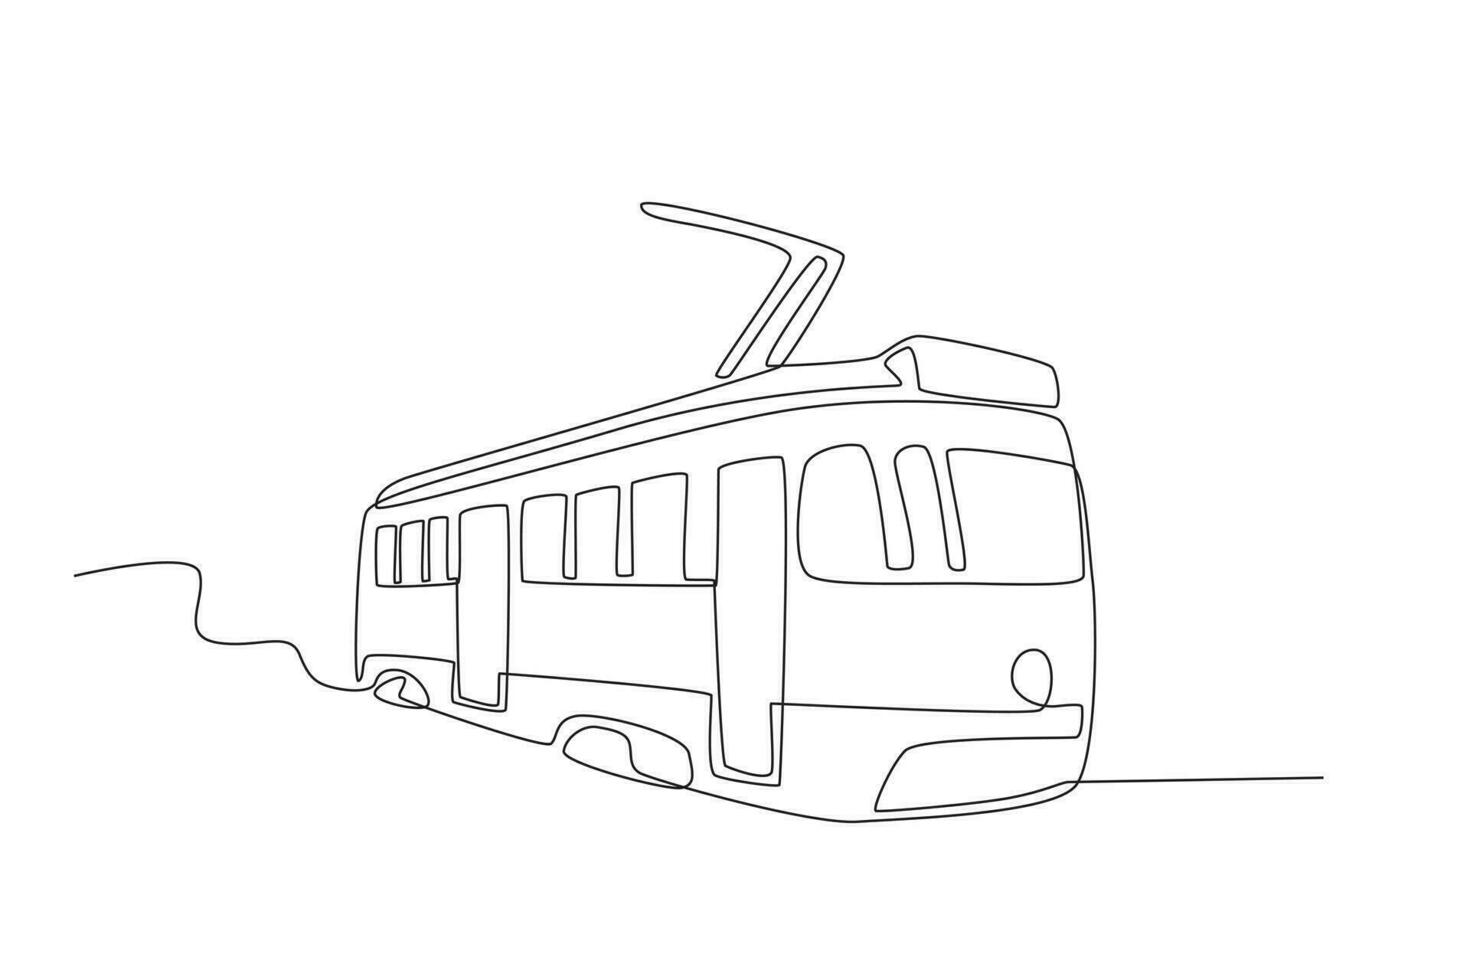 Illustration of a tram vector